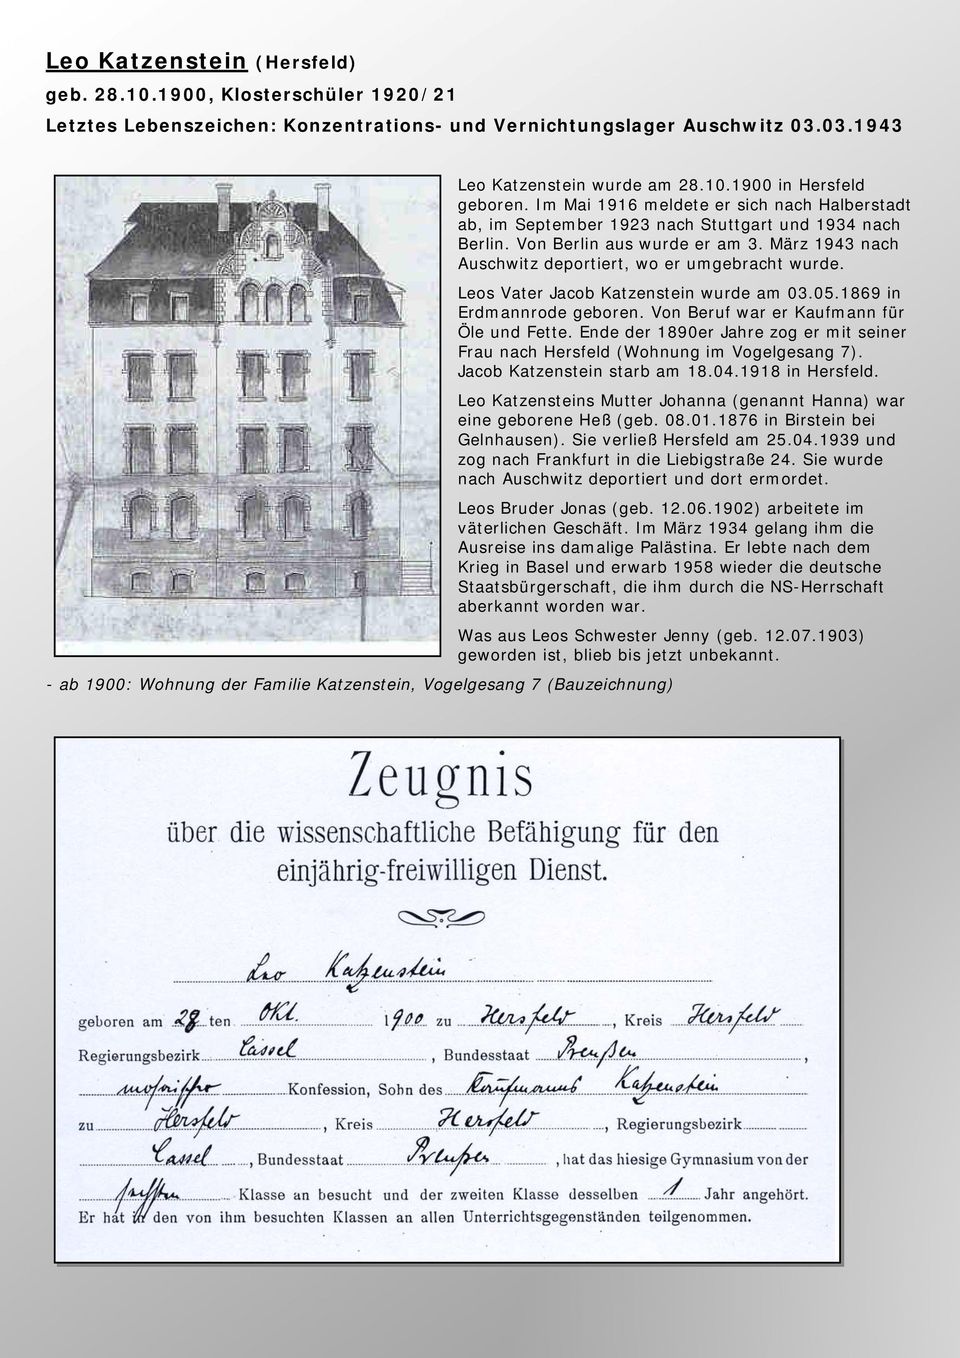 Leos Vater Jacob Katzenstein wurde am 03.05.1869 in Erdmannrode geboren. Von Beruf war er Kaufmann für Öle und Fette.